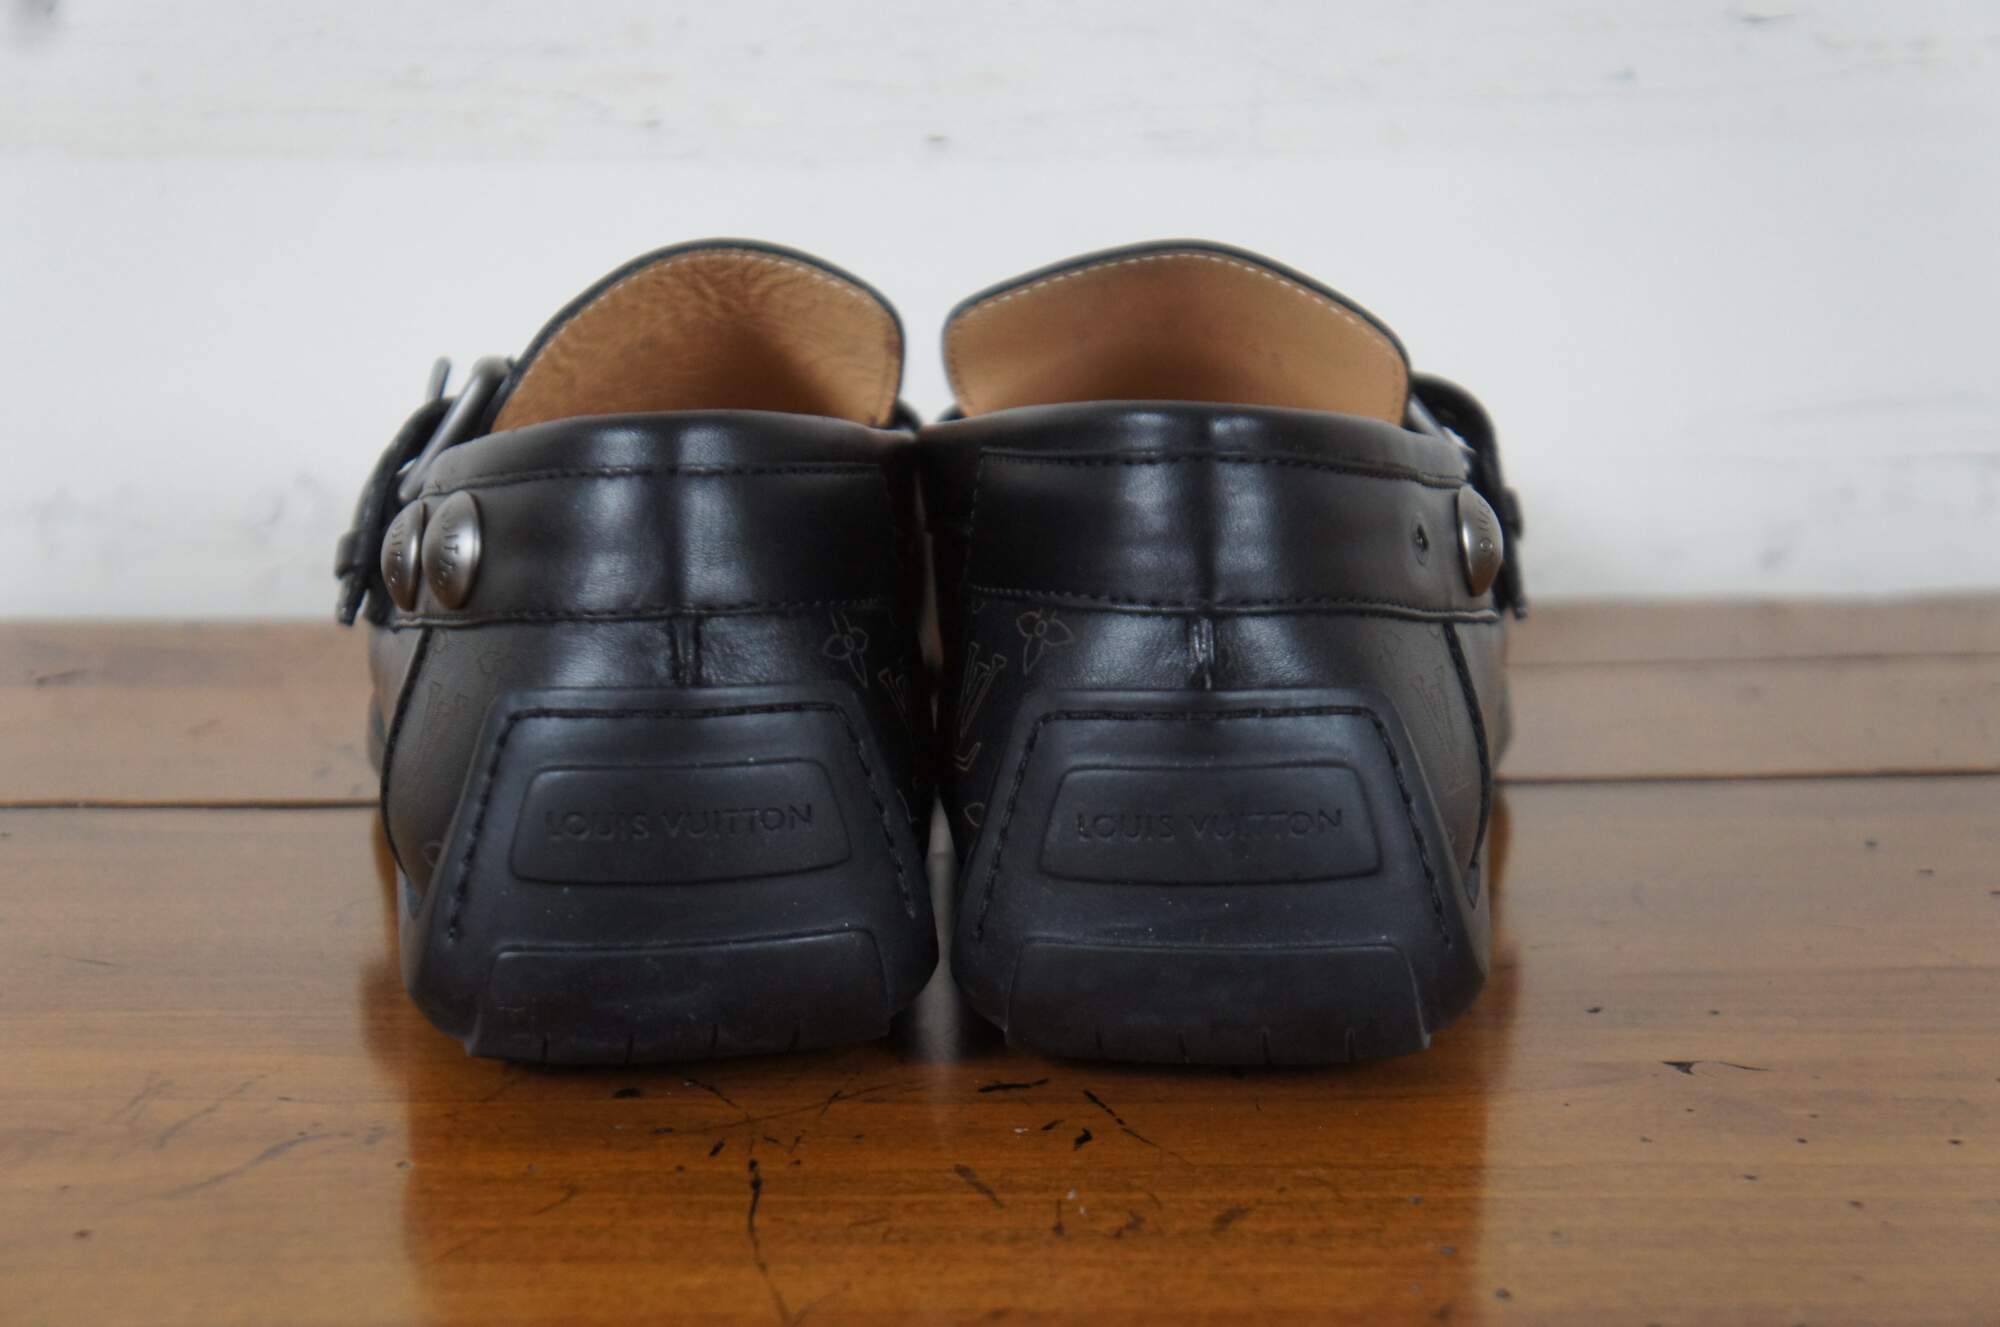 Louis Vuitton men's boat shoes  Loafers men, Boat shoes mens, Casual shoes